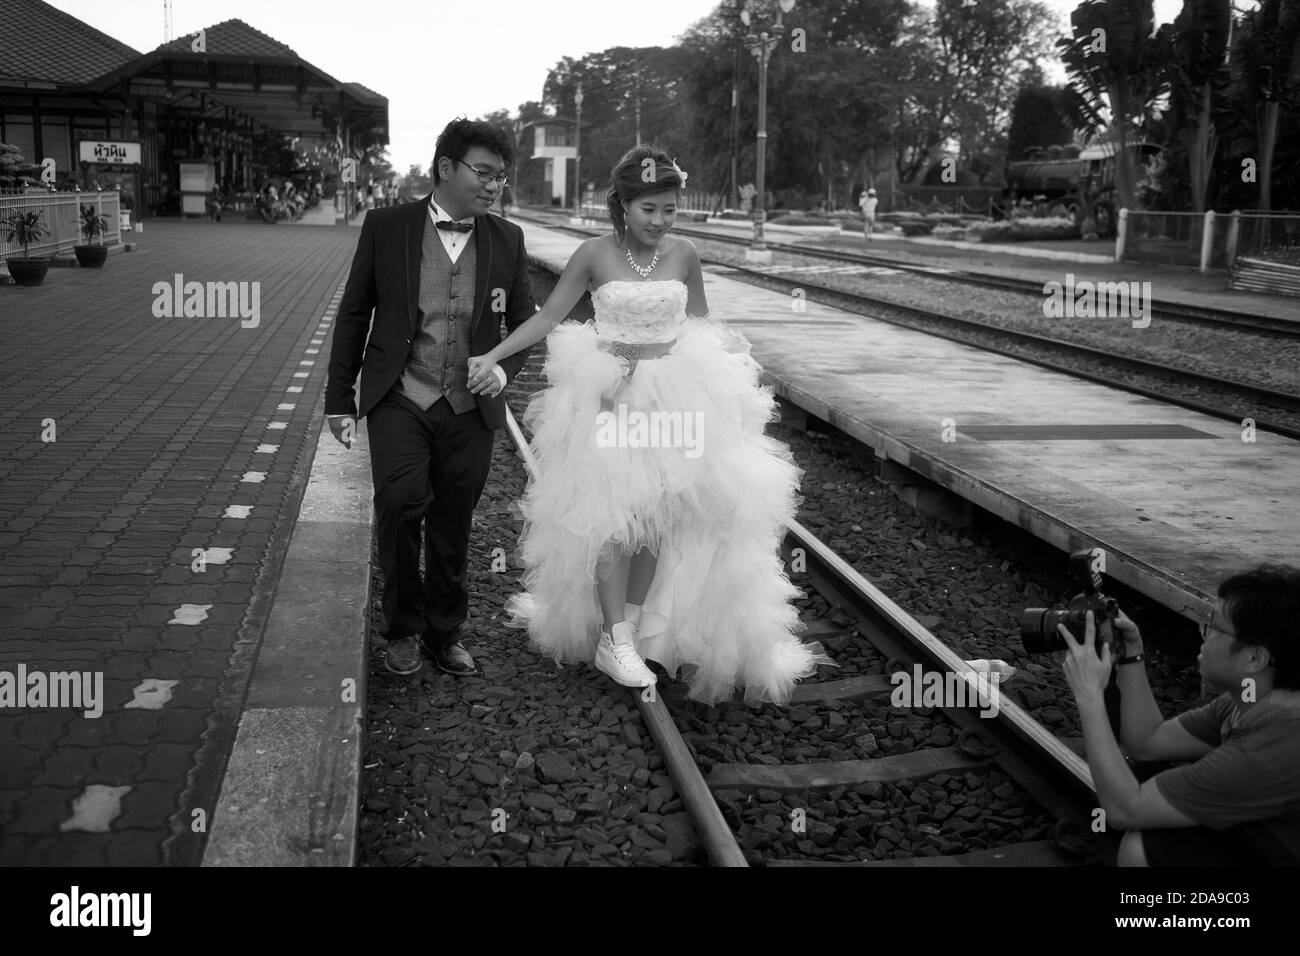 Emplacement inhabituel pour une séance photo avant mariage avec future mariée et marié sur la voie ferrée à une gare. Hua Hin Thaïlande. Noir et blanc Banque D'Images